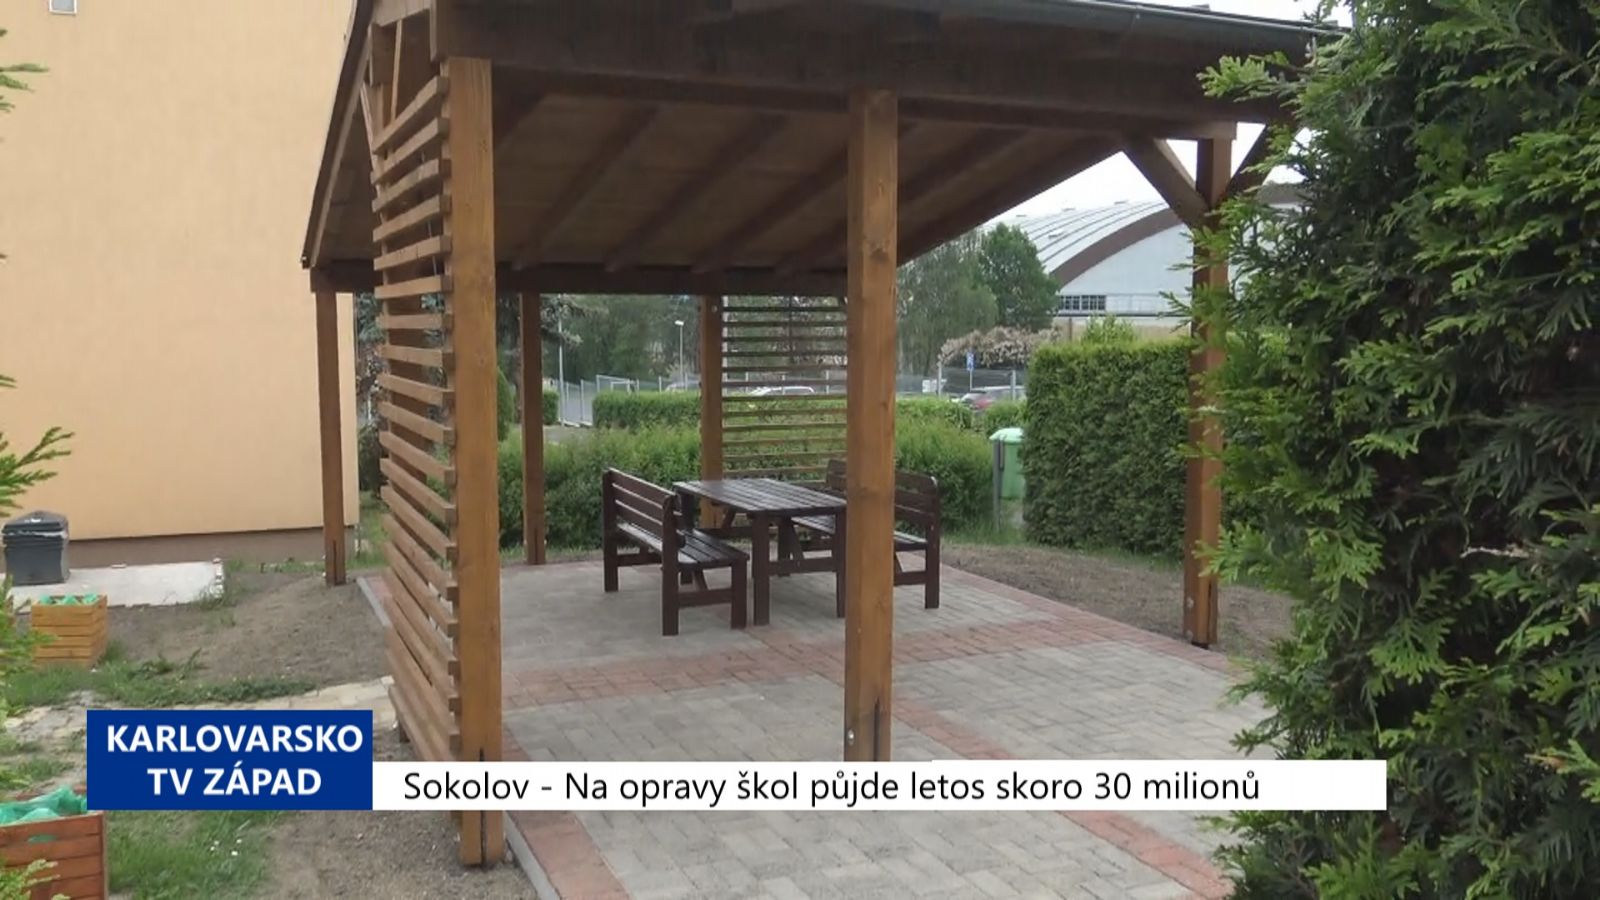 Sokolov: Na opravy škol půjde letos skoro 29 milionů (TV Západ)